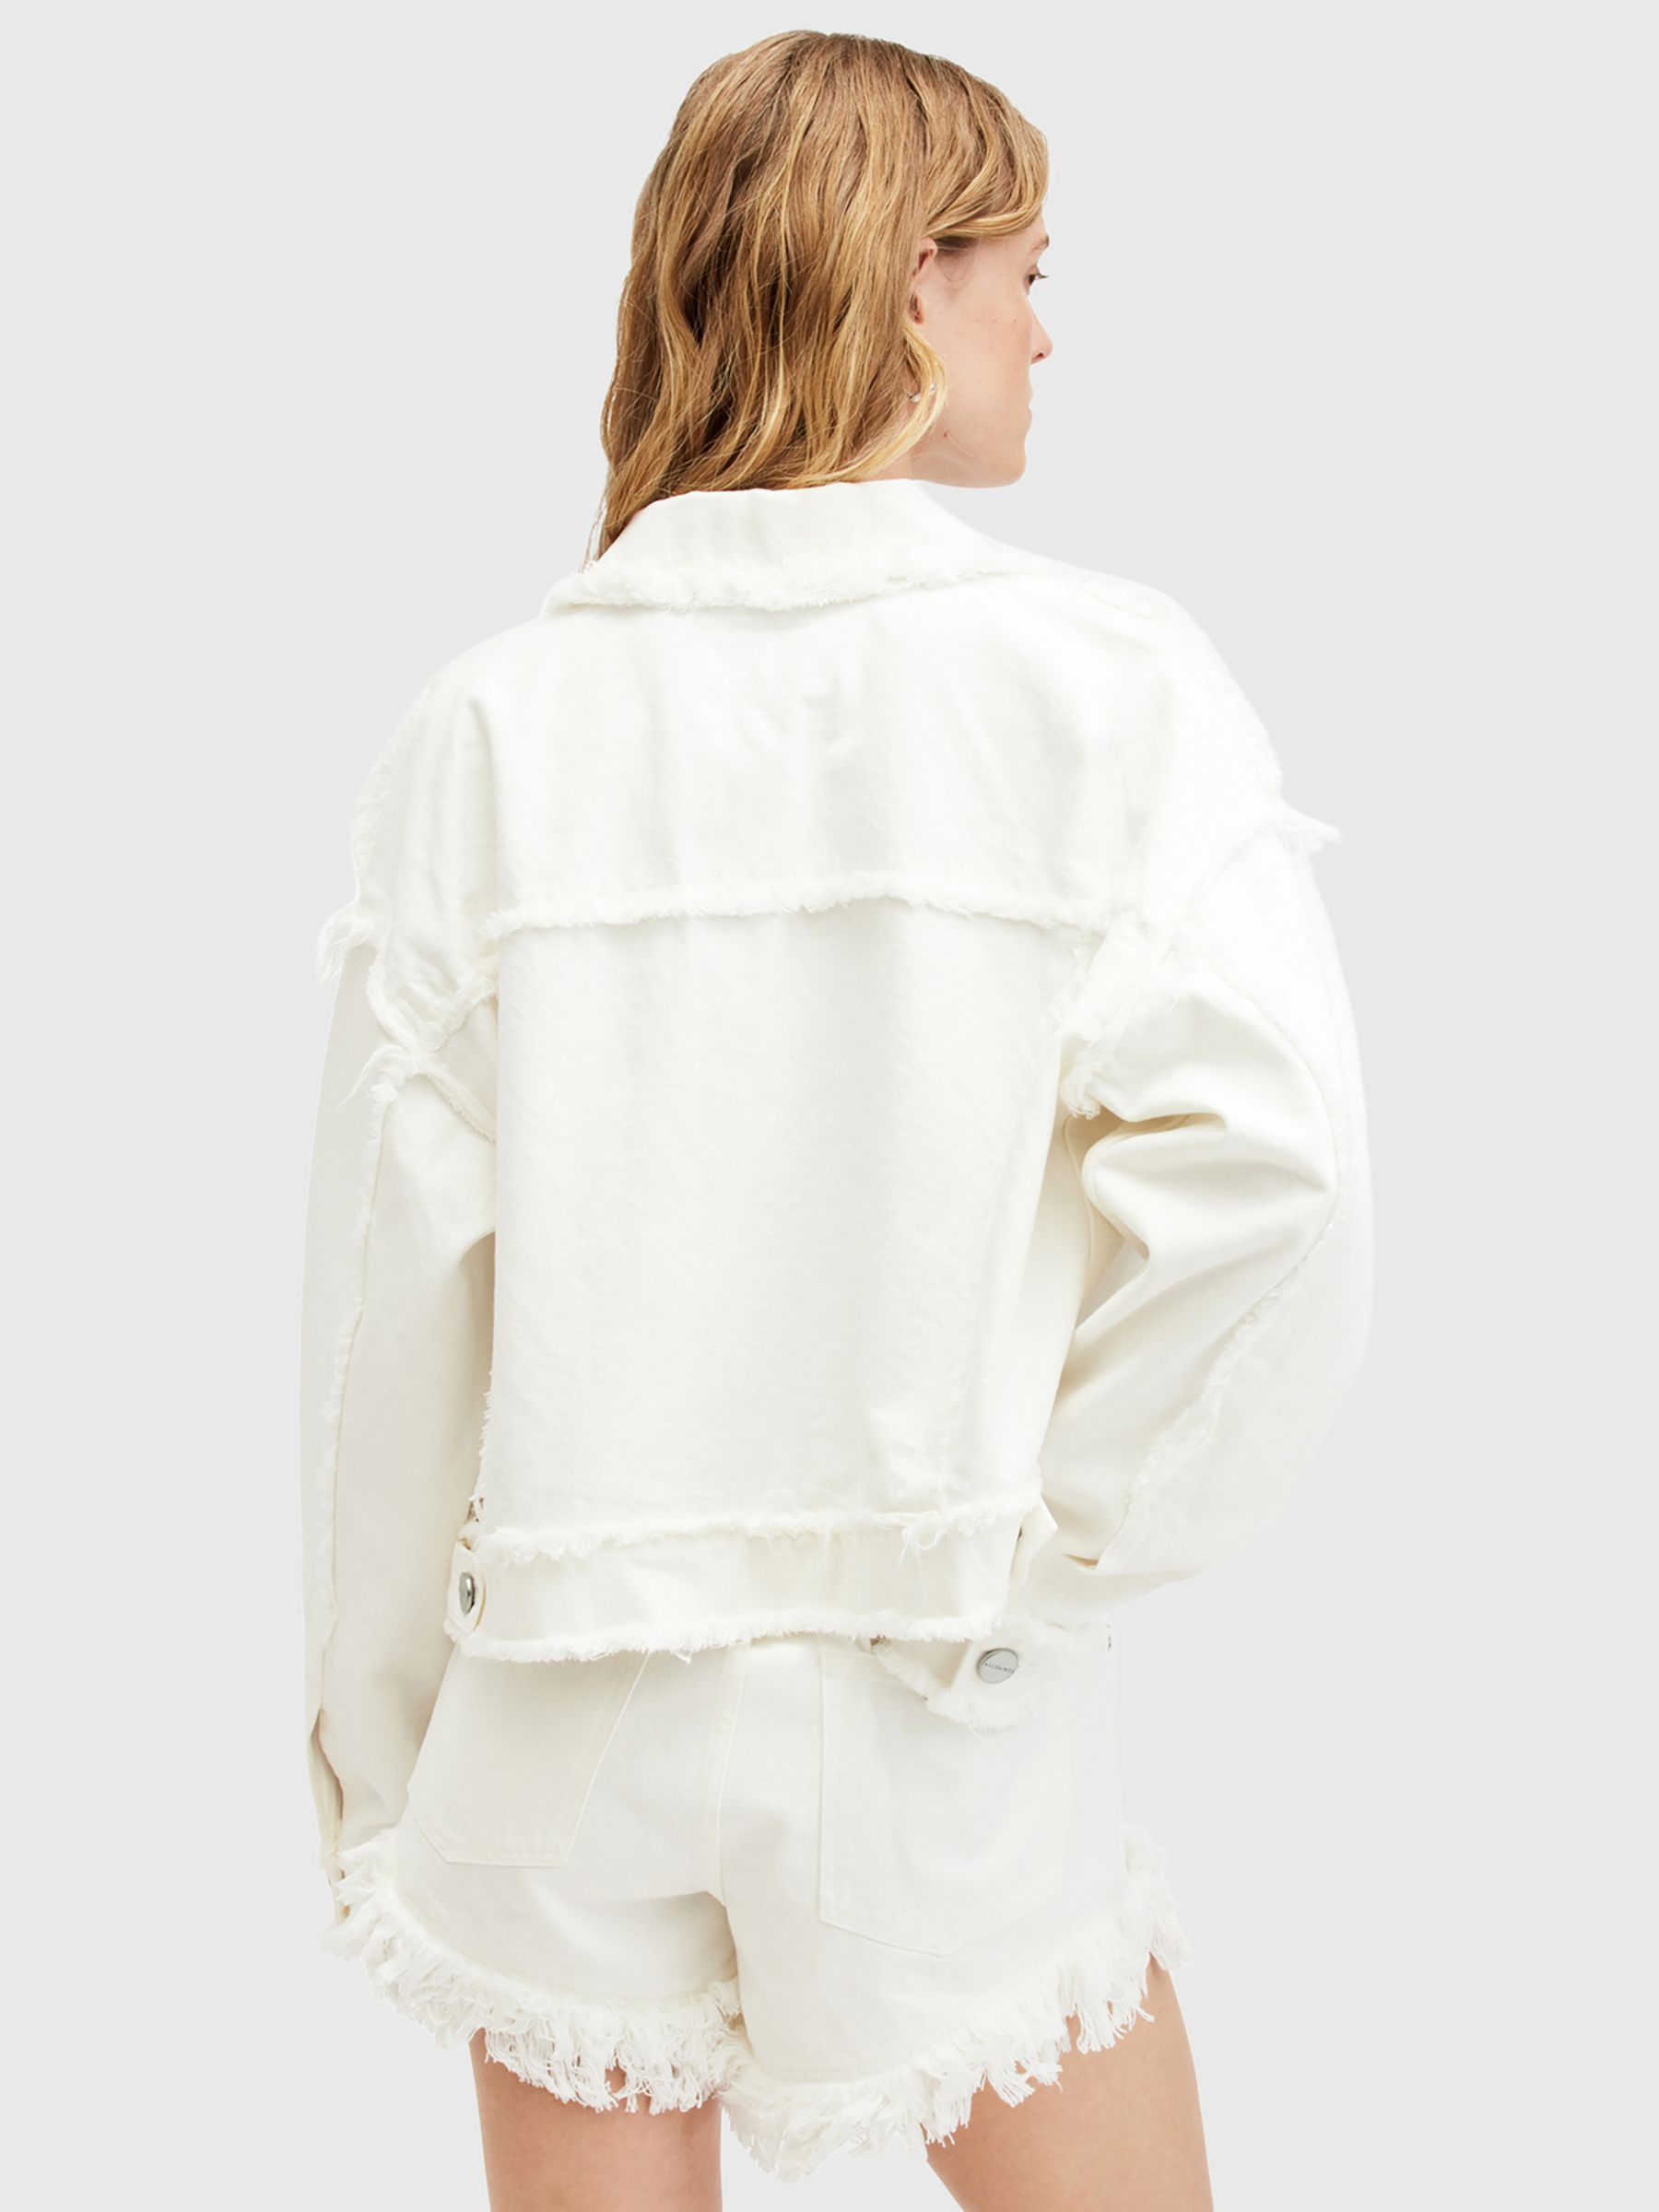 Buy AllSaints Claude Frayed Denim Jacket Online at johnlewis.com